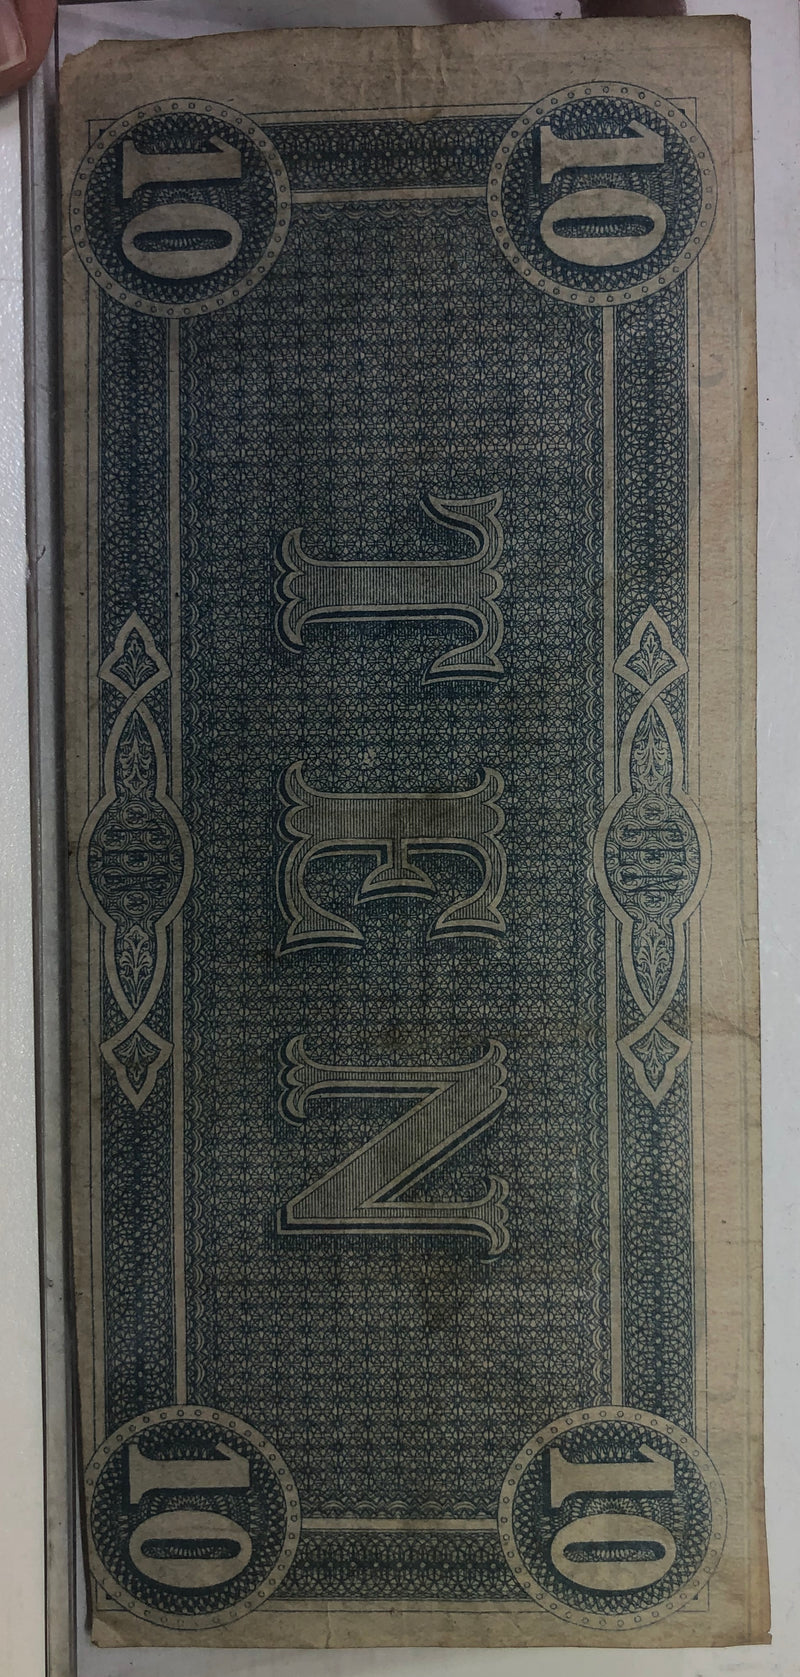 $10 1864 Confederate Note APR 57